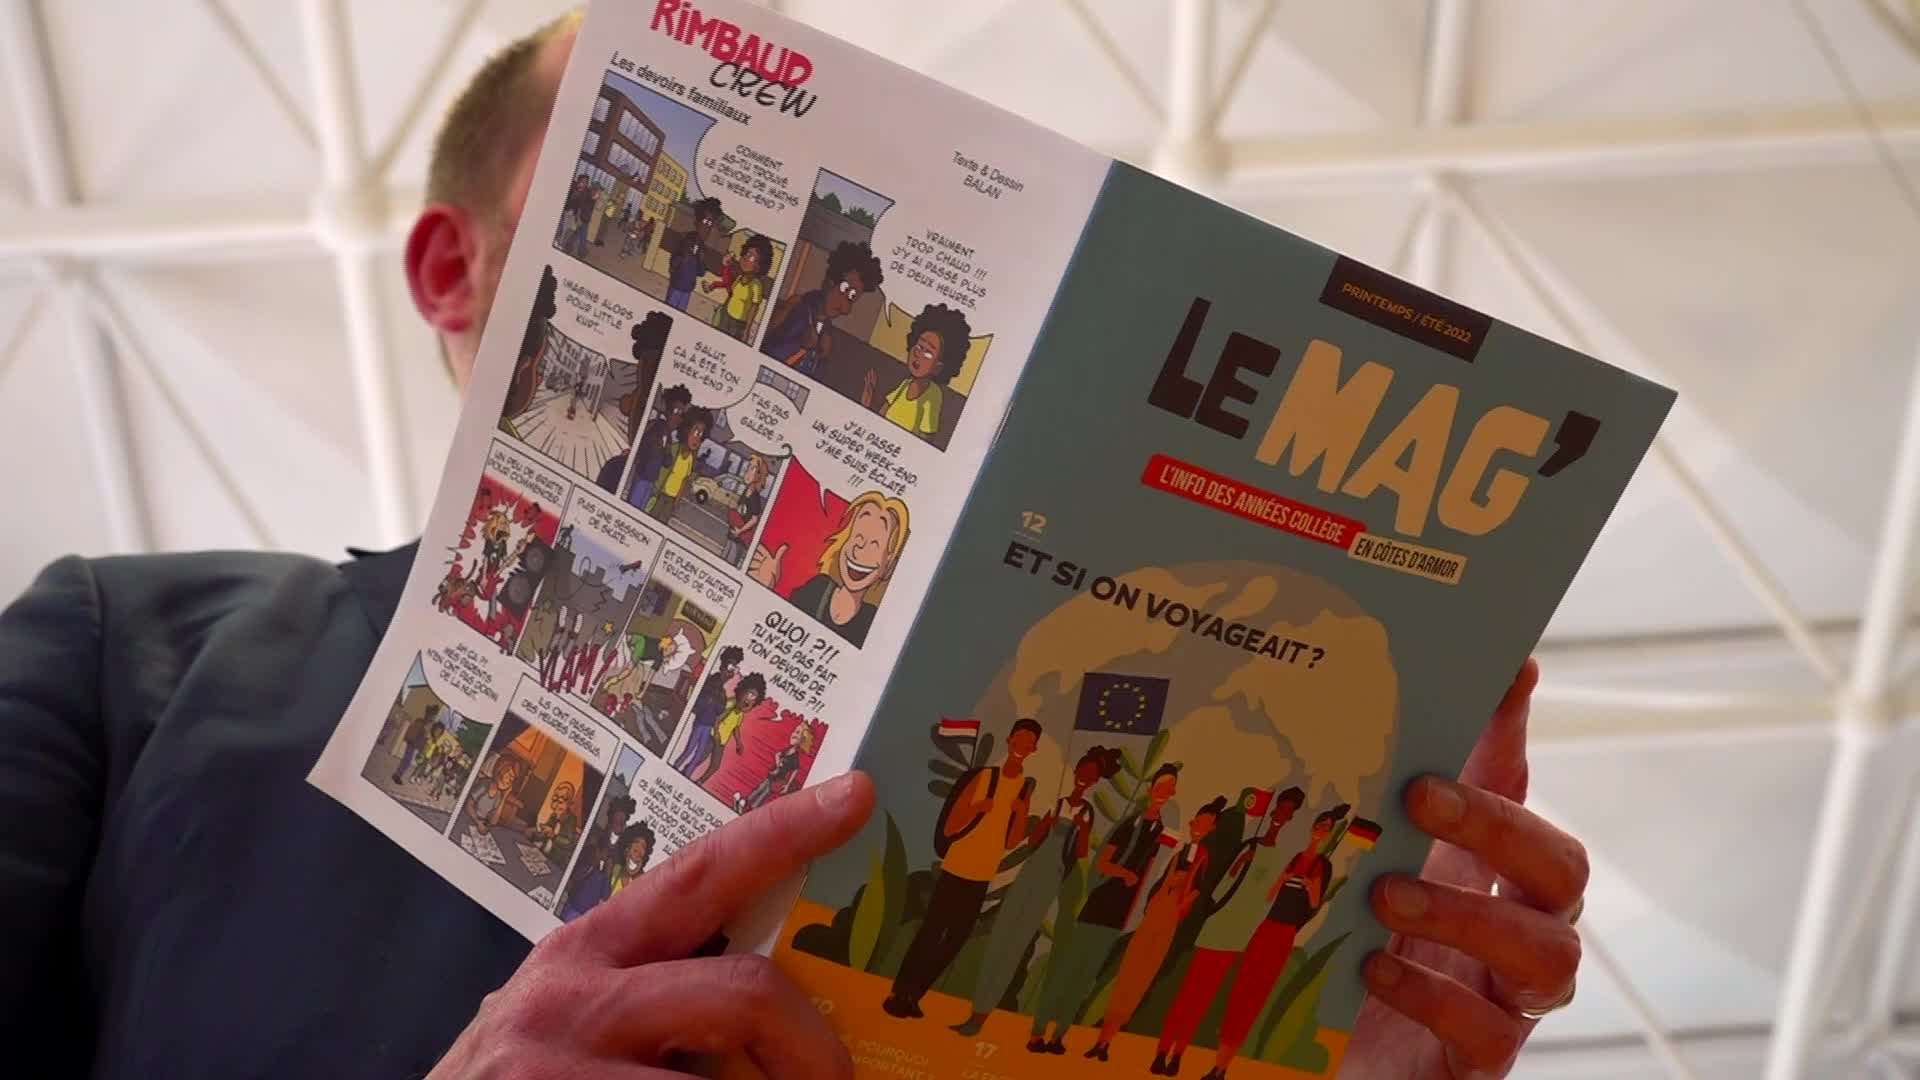 Les collégiens des Côtes d'Armor ont leur magazine (Tébéo-TébéSud)